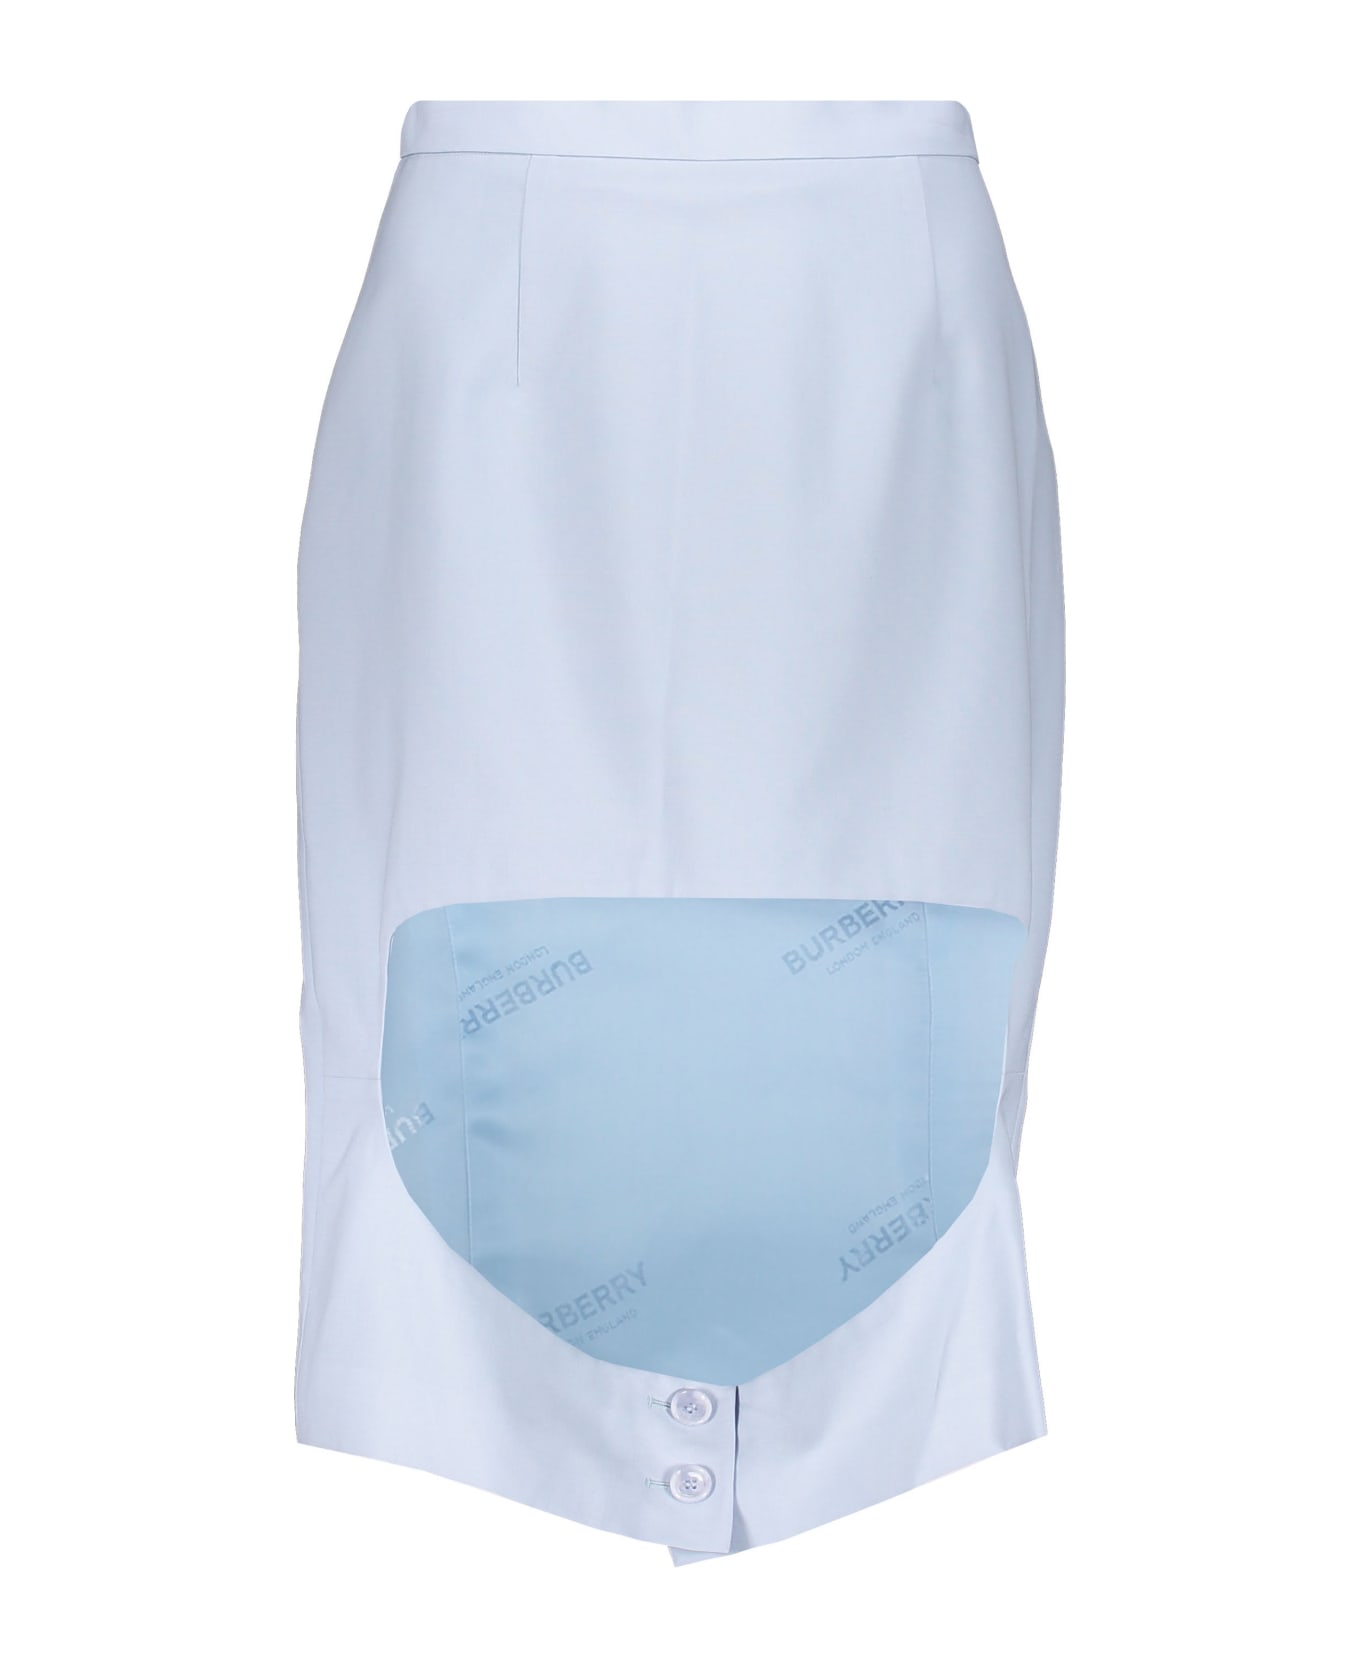 Burberry Midi Skirt - Light Blue